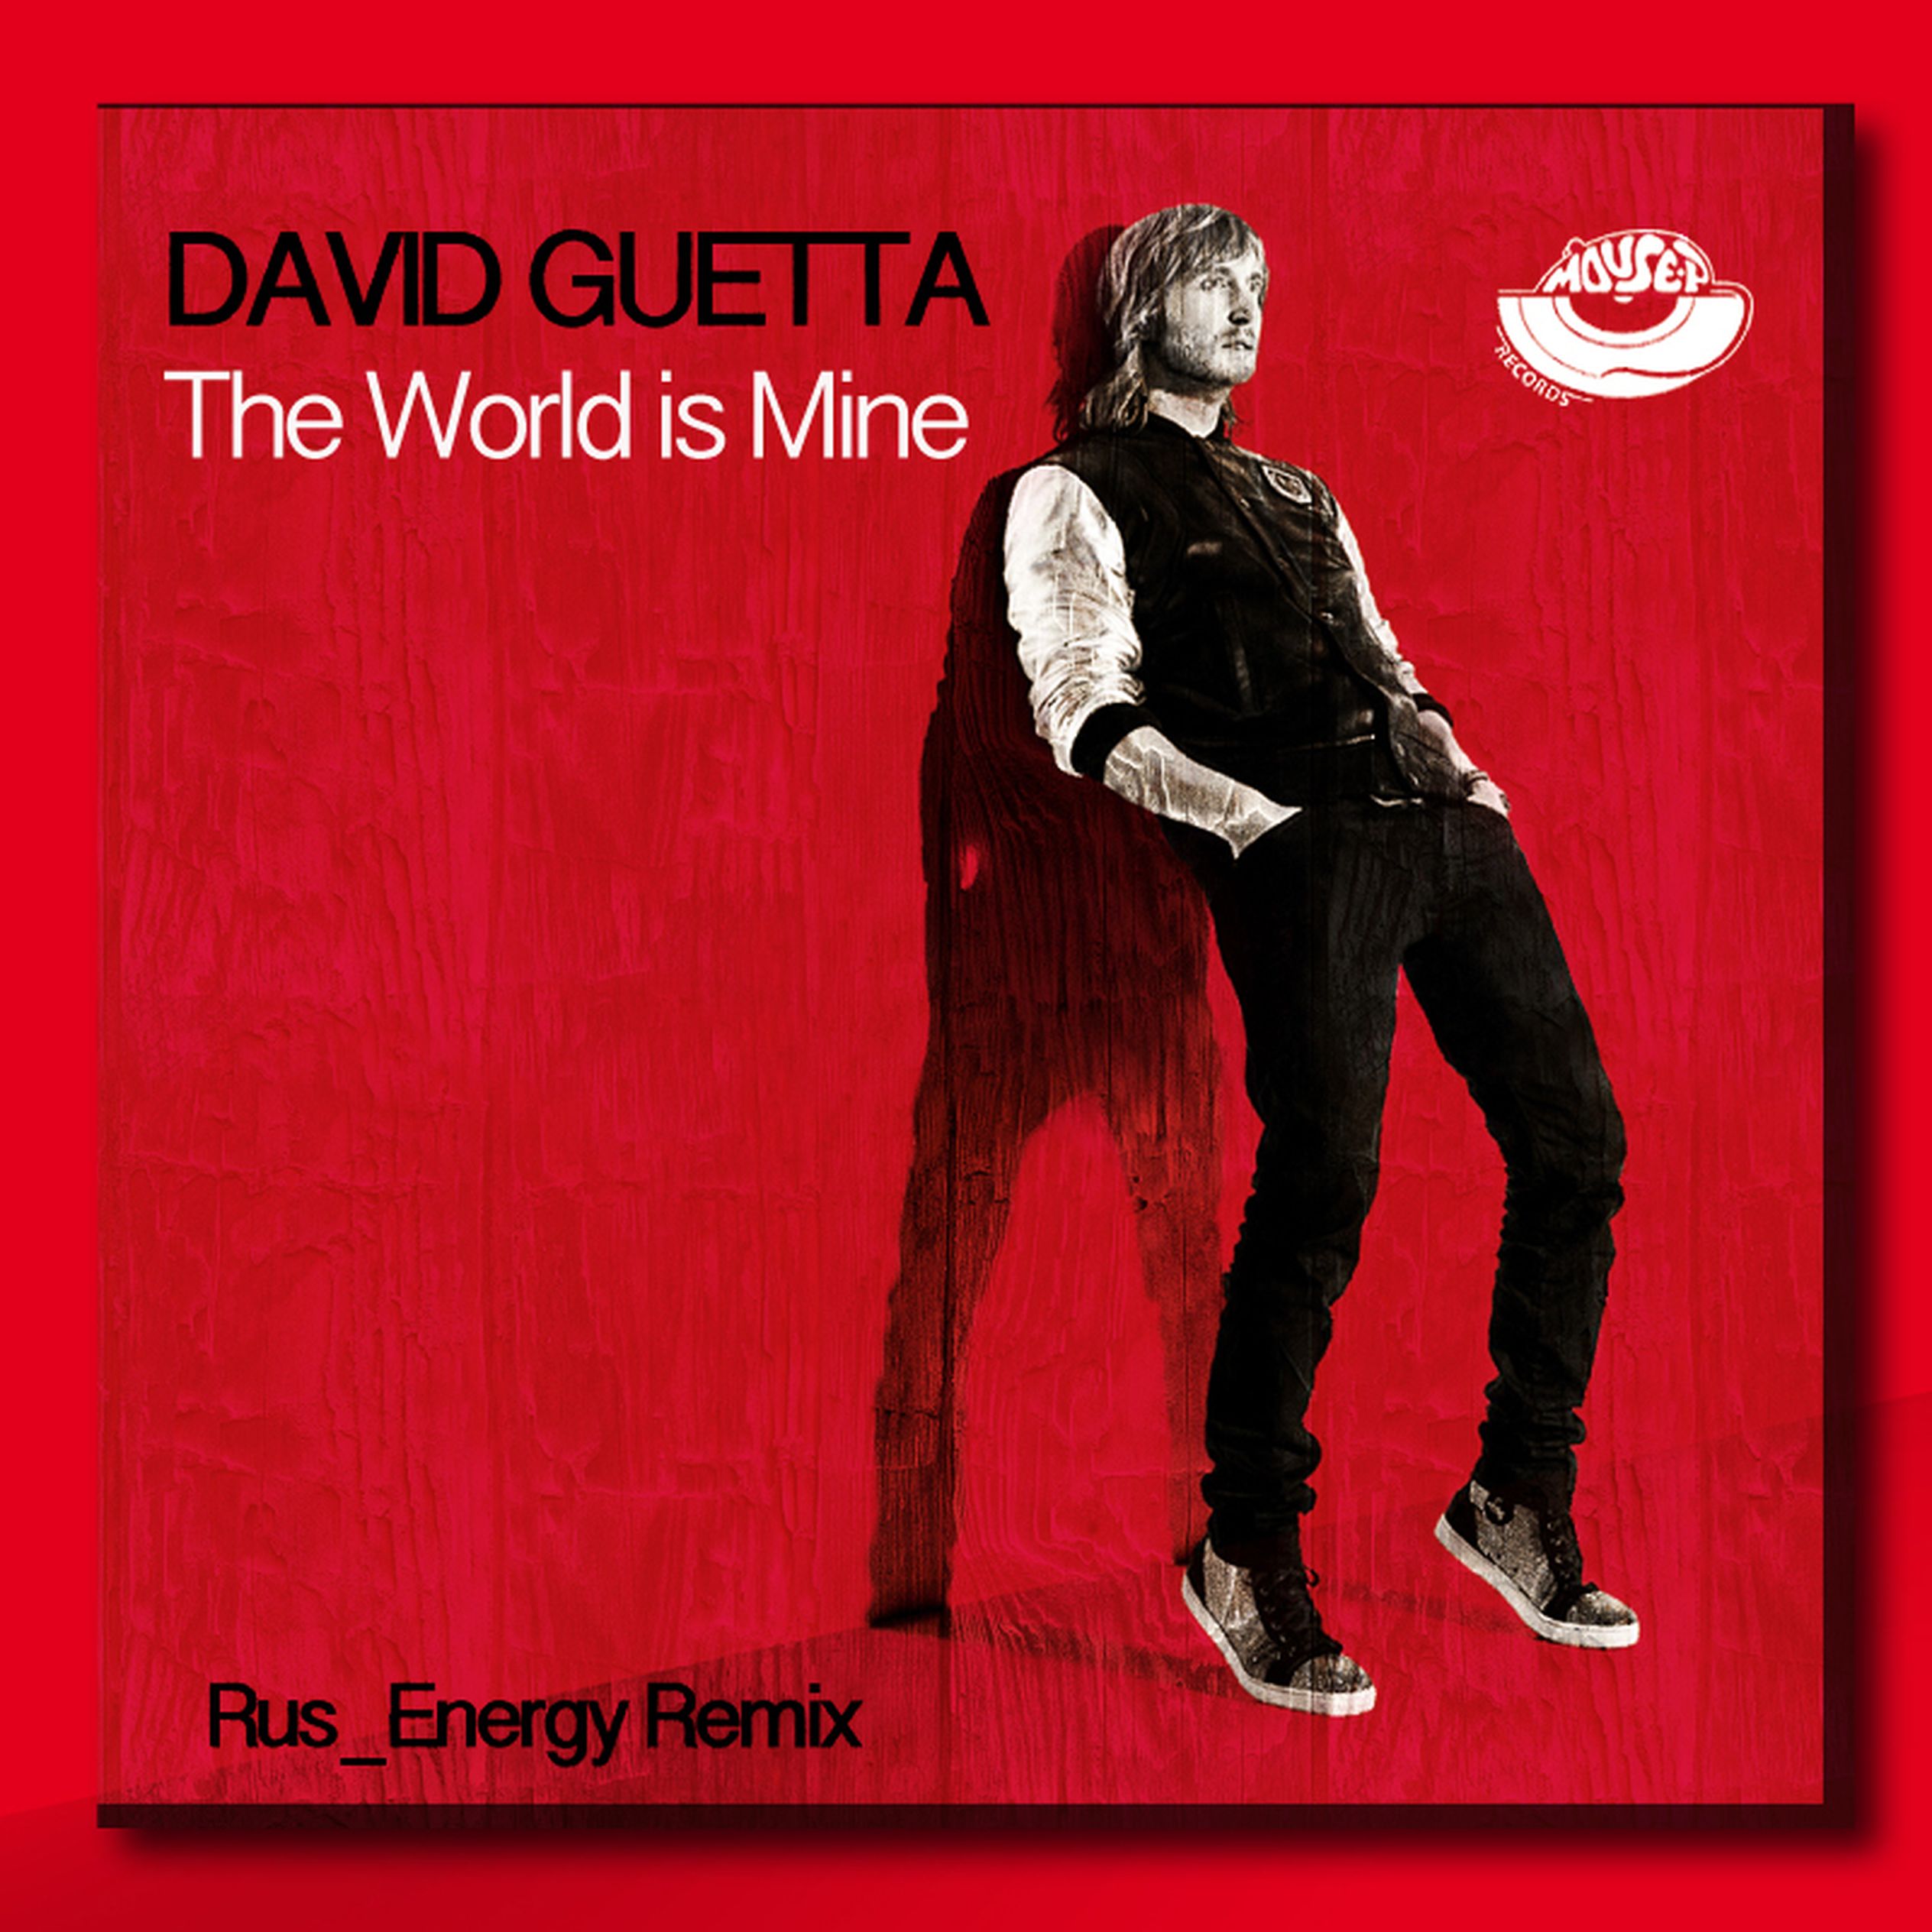 David guetta world is